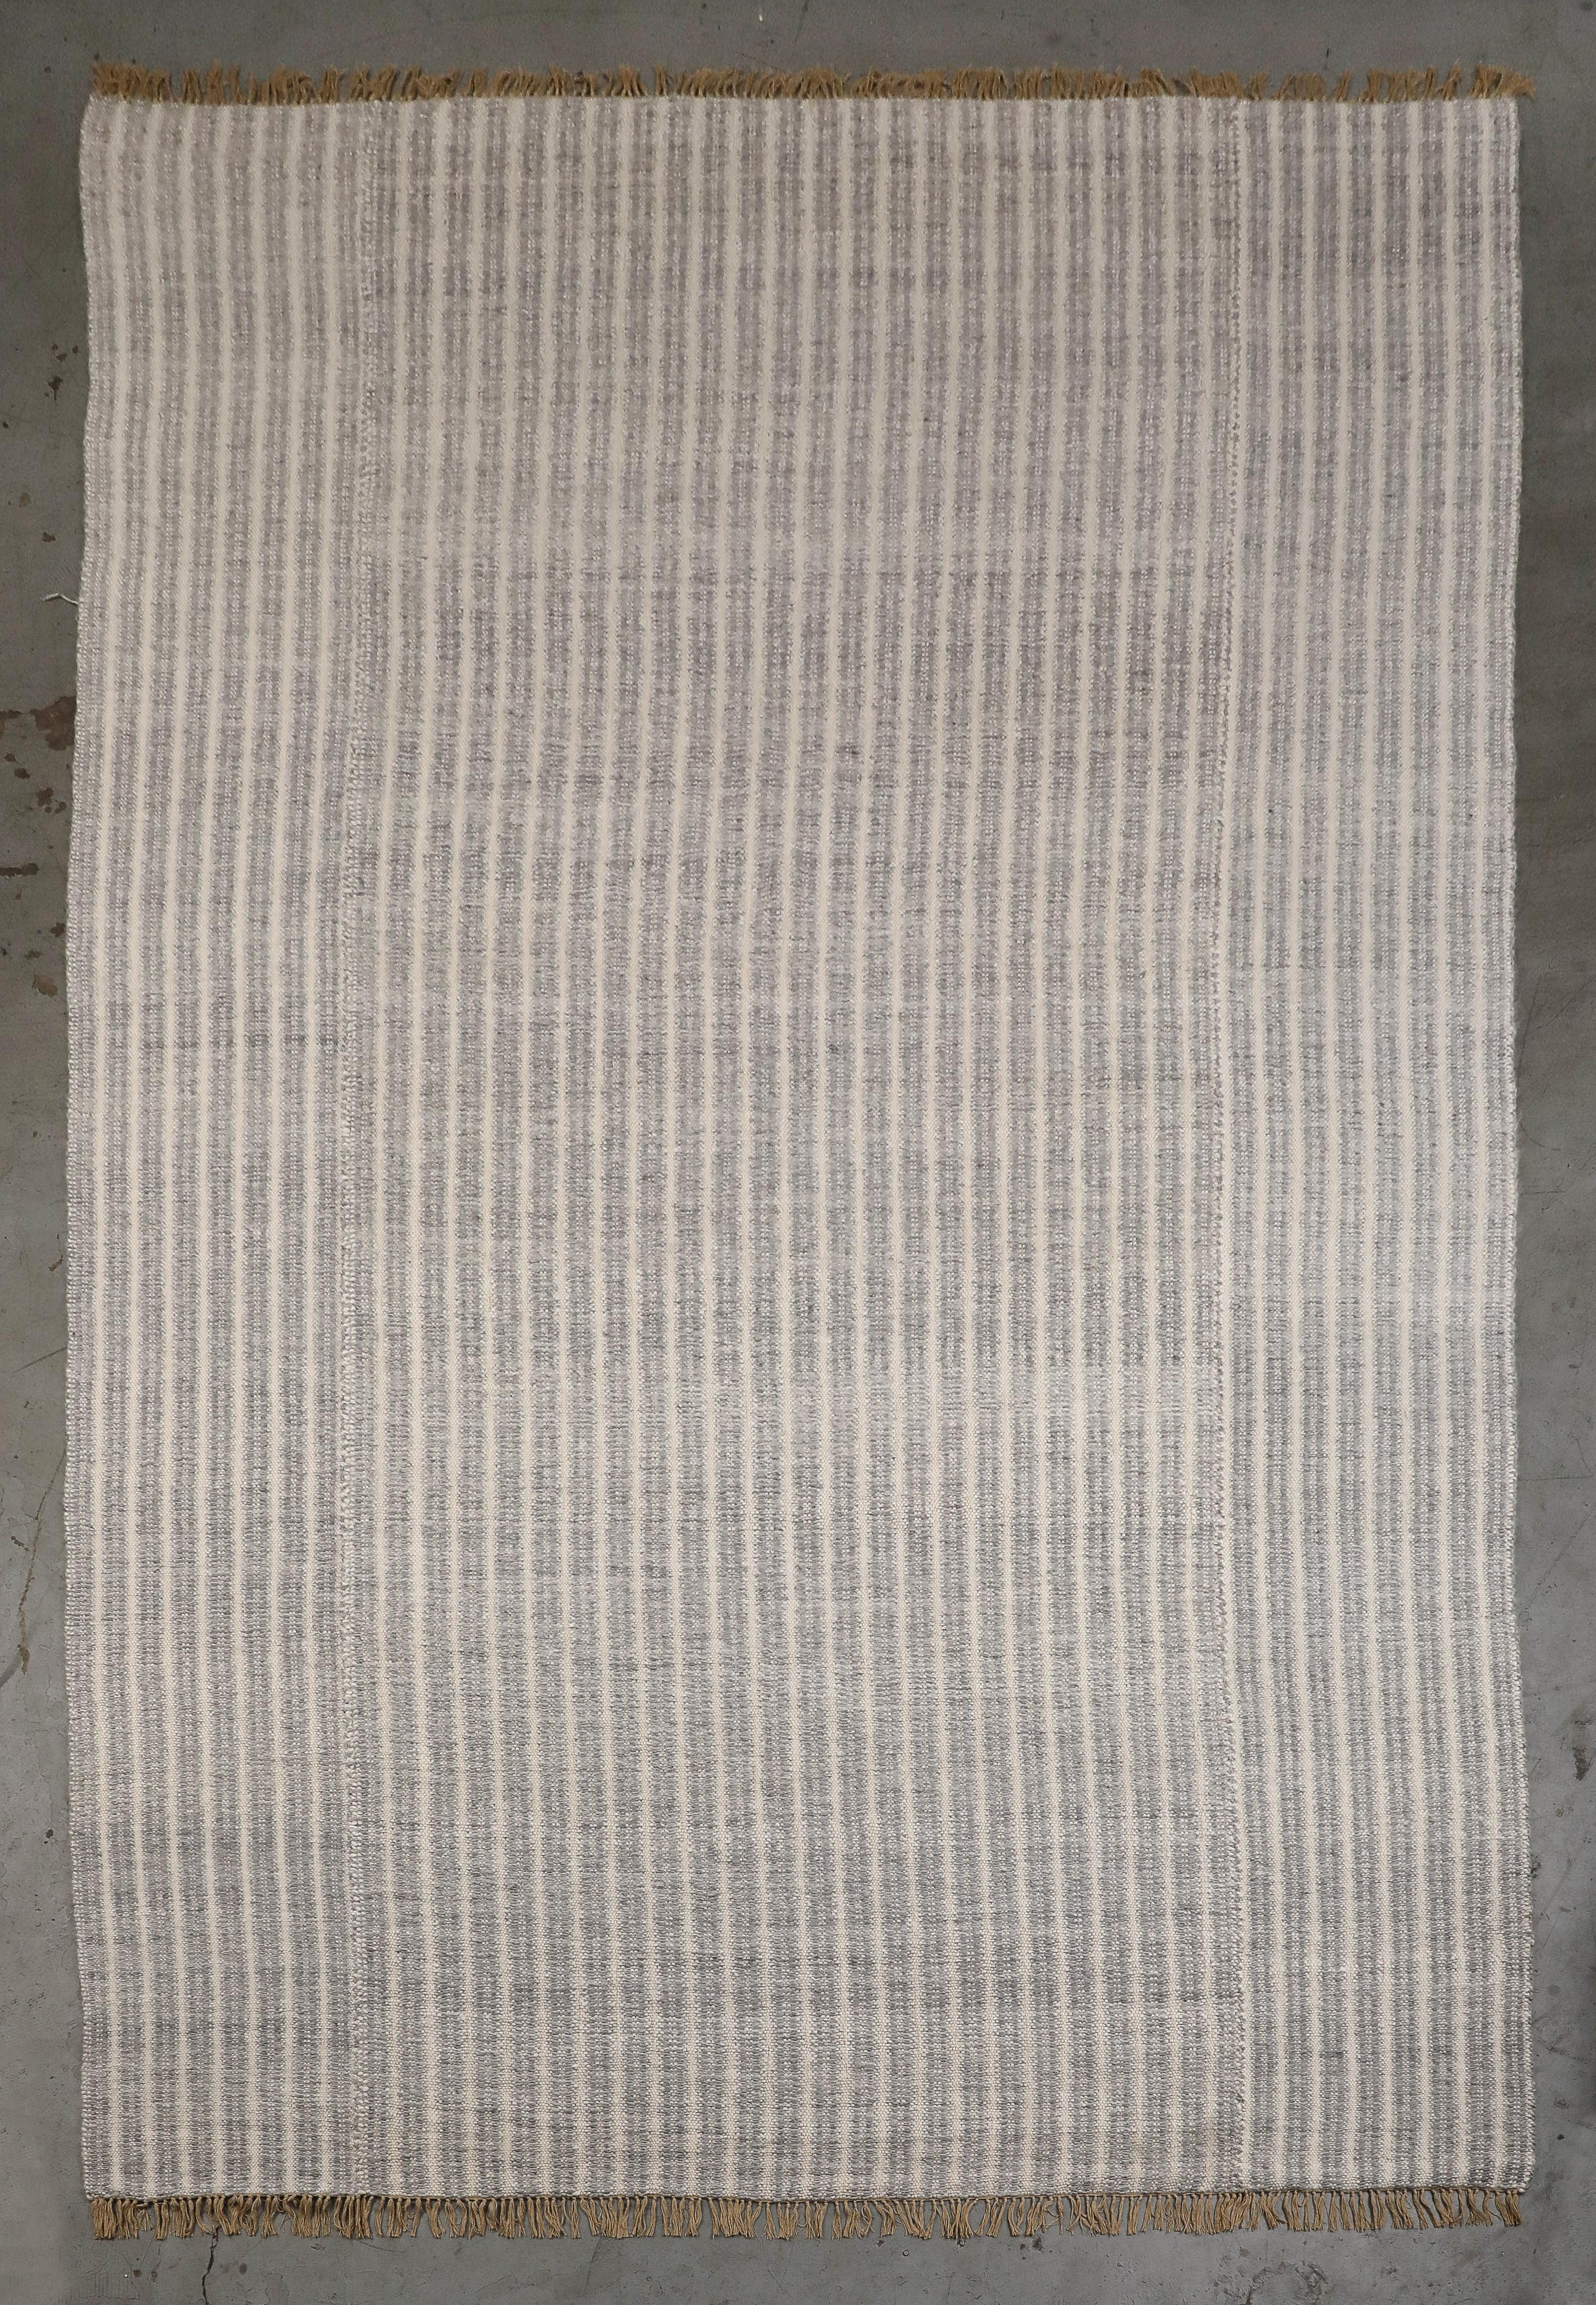 Gerippter Mohair-Teppich, maßgefertigt von Ennui Home im Jahr 2021. Dieser von Kunsthandwerkern in Afrika handgefertigte Teppich wurde noch nie in einem Haushalt verwendet. Blaugraue und cremefarbene Streifen mit kurzen, handgeknüpften hellbraunen